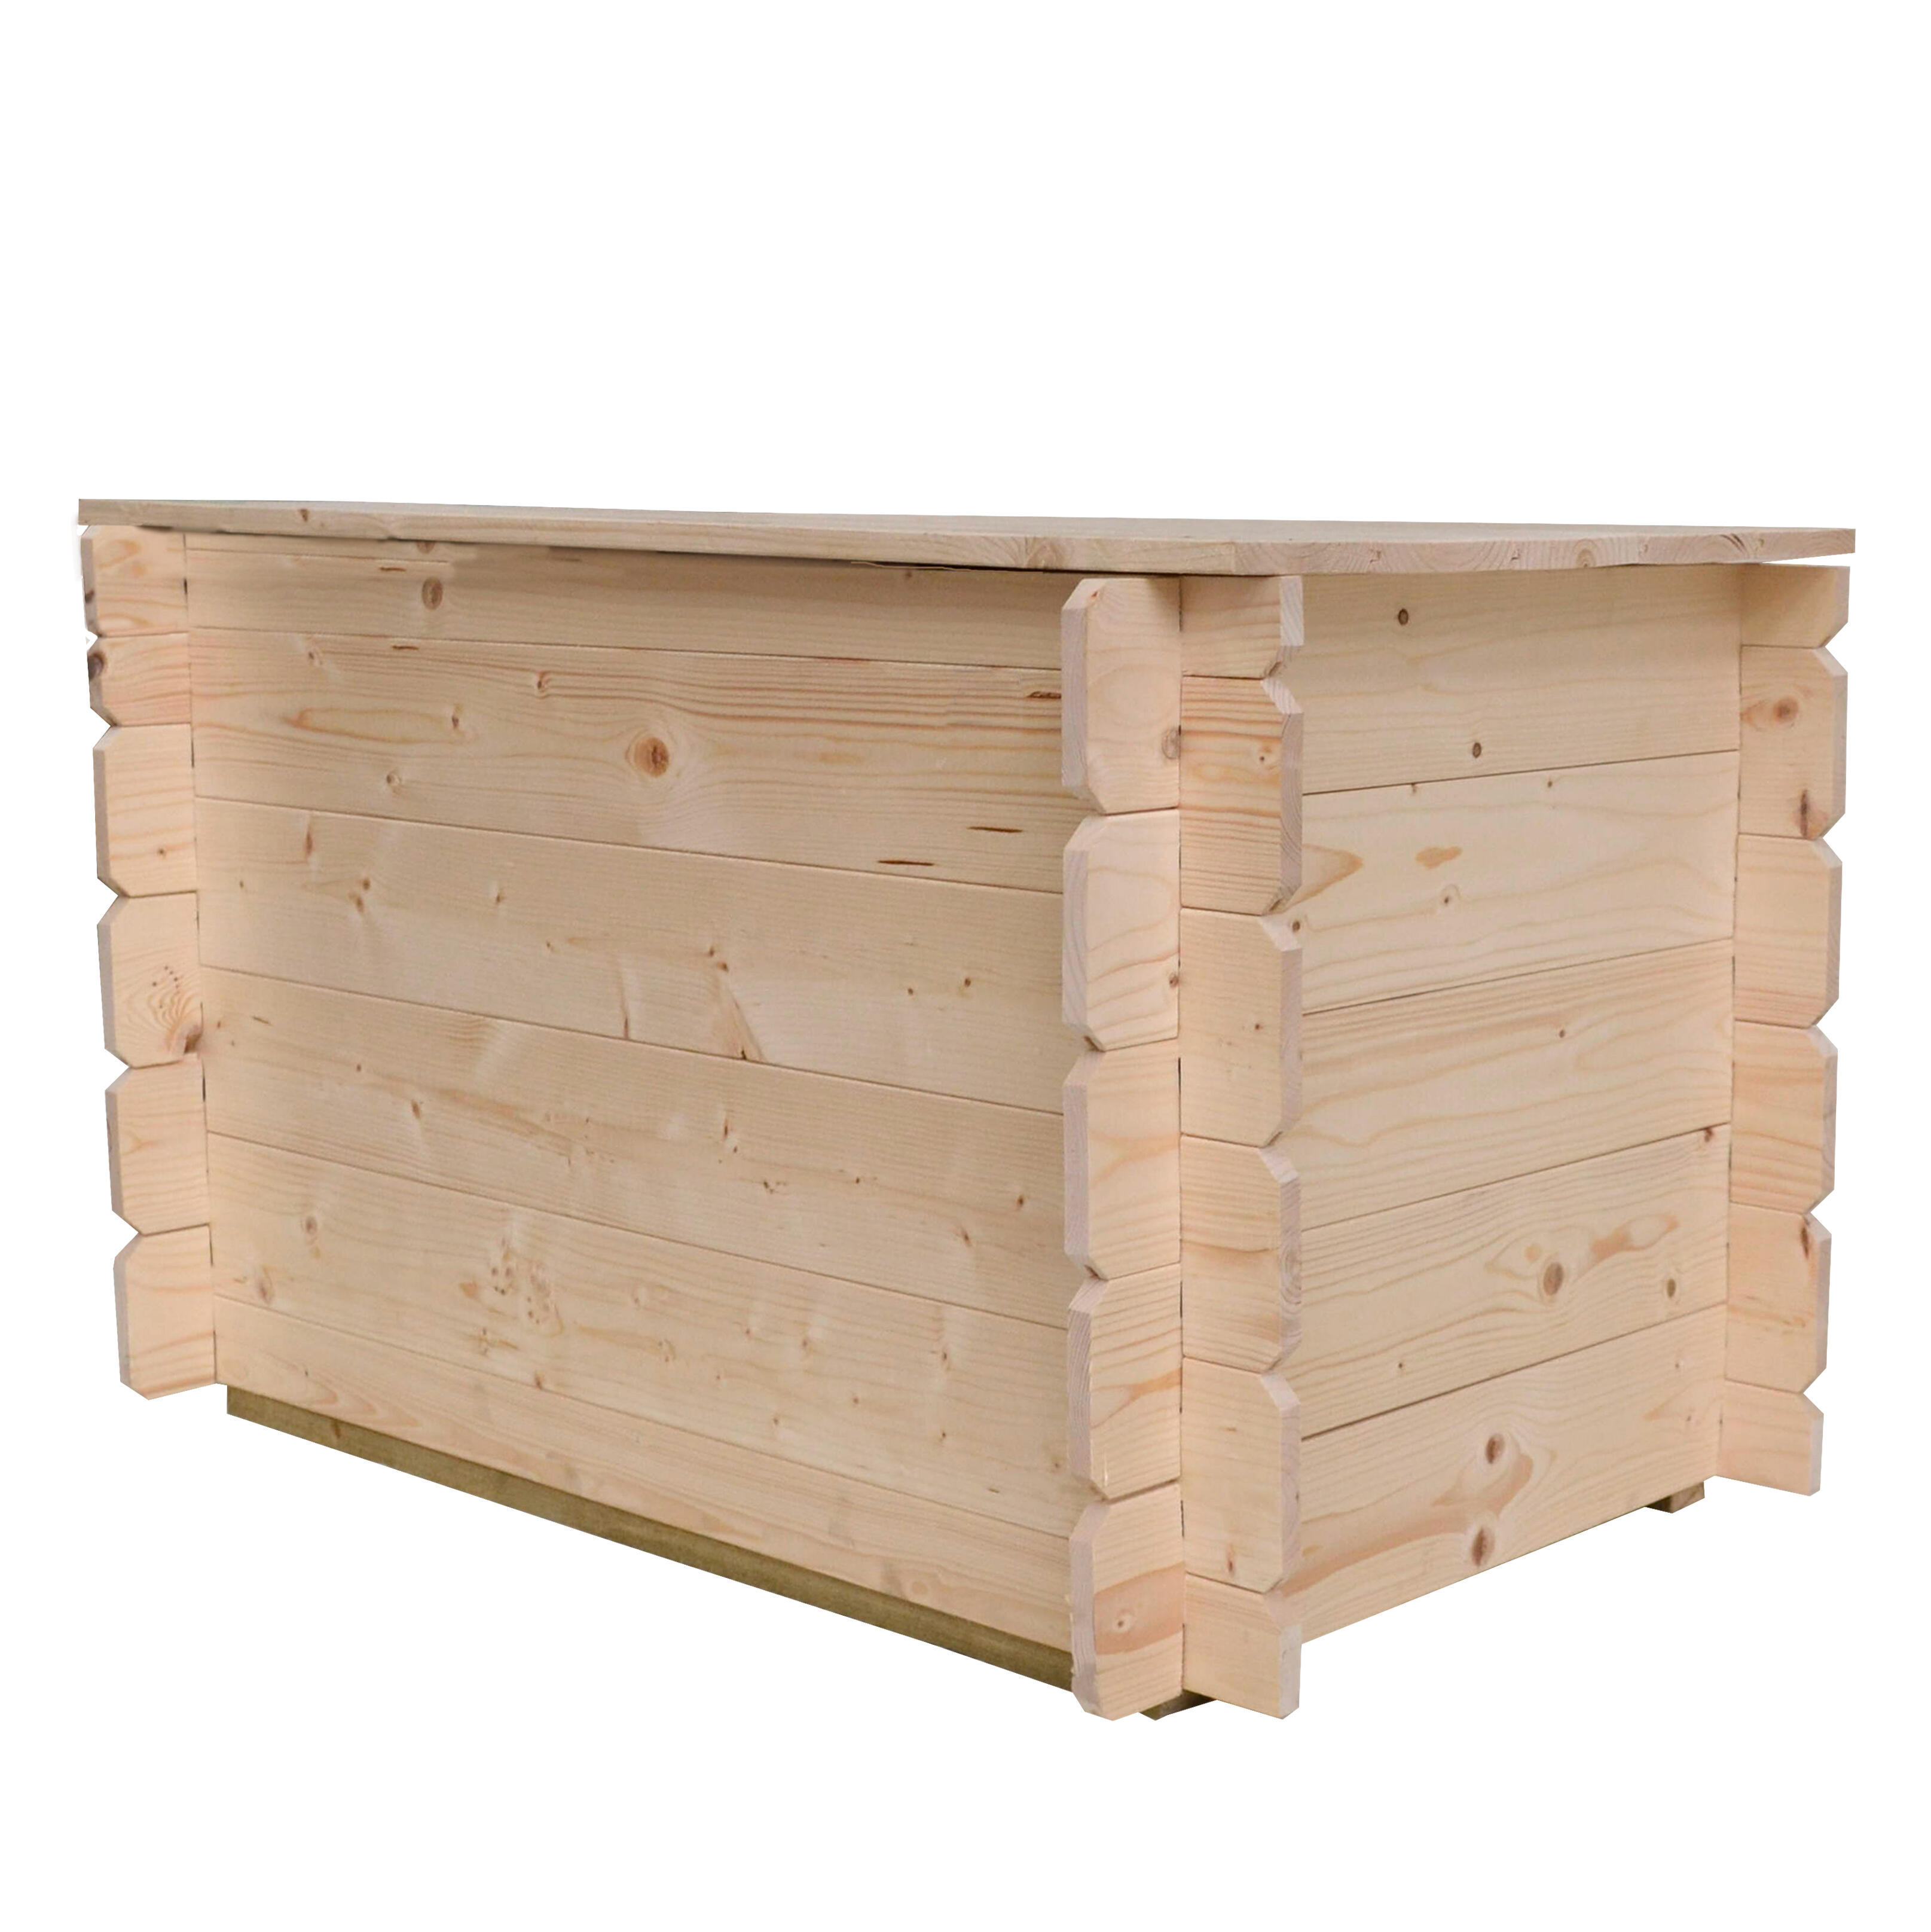 Cassapanca baule cassa contenitore in legno da esterno in legno 120X53 H58